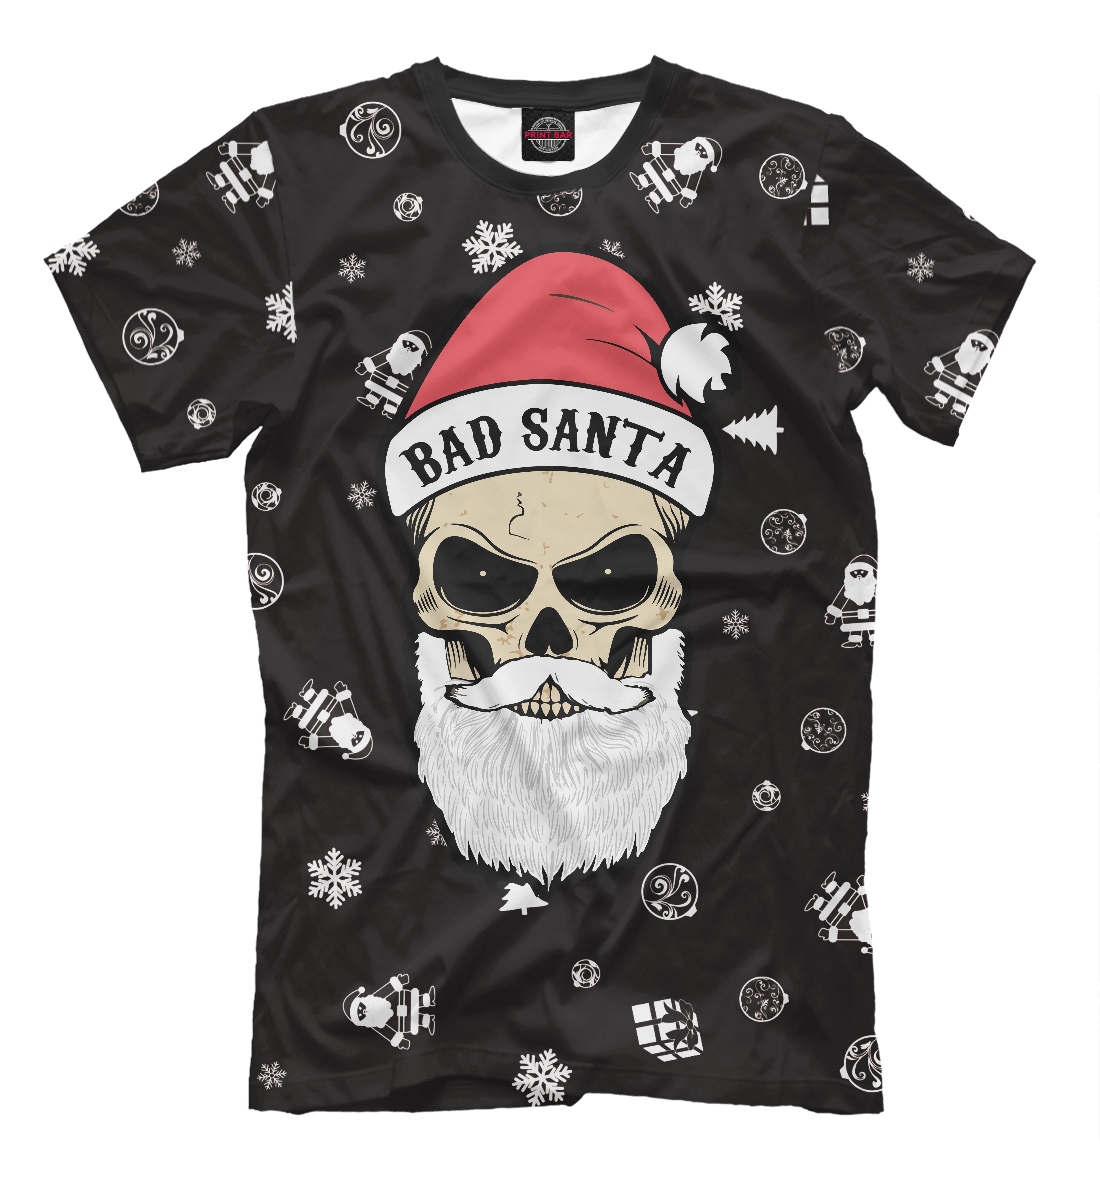 Футболка Bad Santa для мужчин, артикул: DMZ-898025-fut-2mp